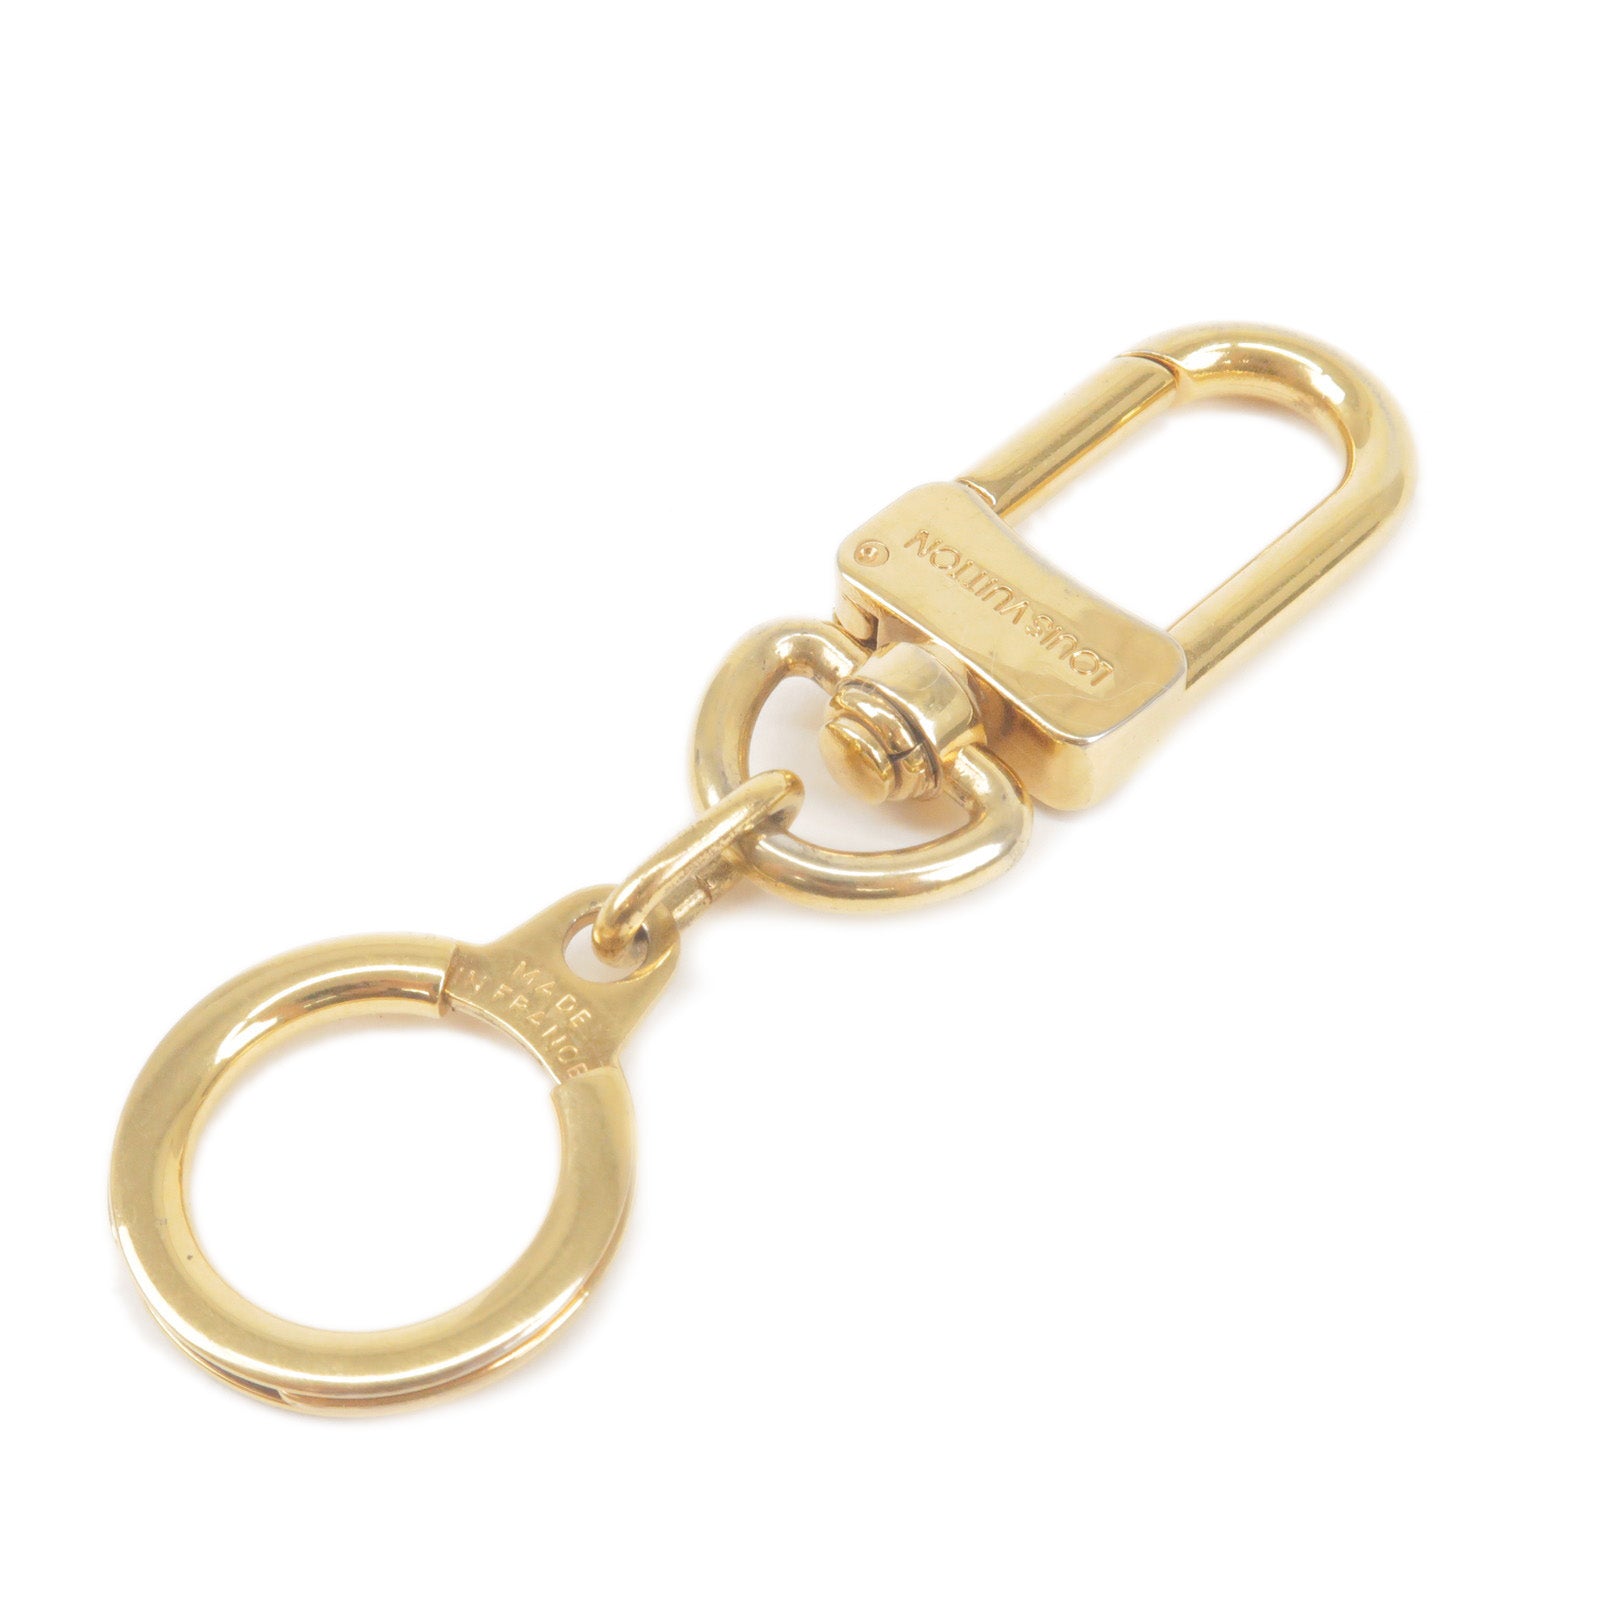 Louis-Vuitton-Ano-Cles-Key-Chain-Bag-Chram-Gold-M62694